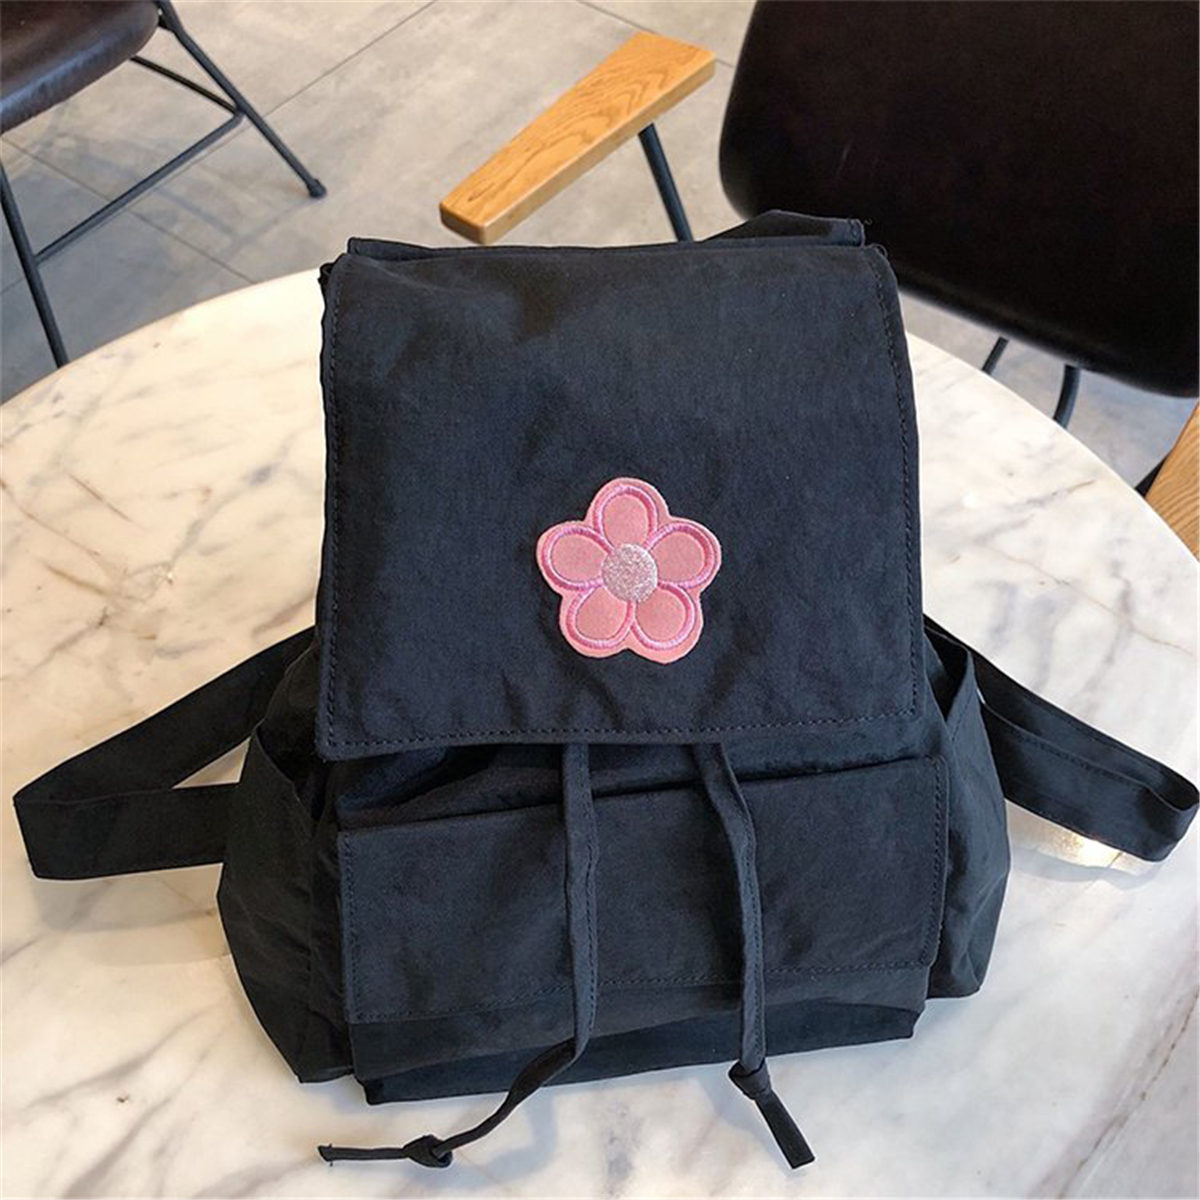 Outdoor-Nylon-School-Bag-Portable-Girl-Backpack-Travel-Shoulder-Bag-1627690-1